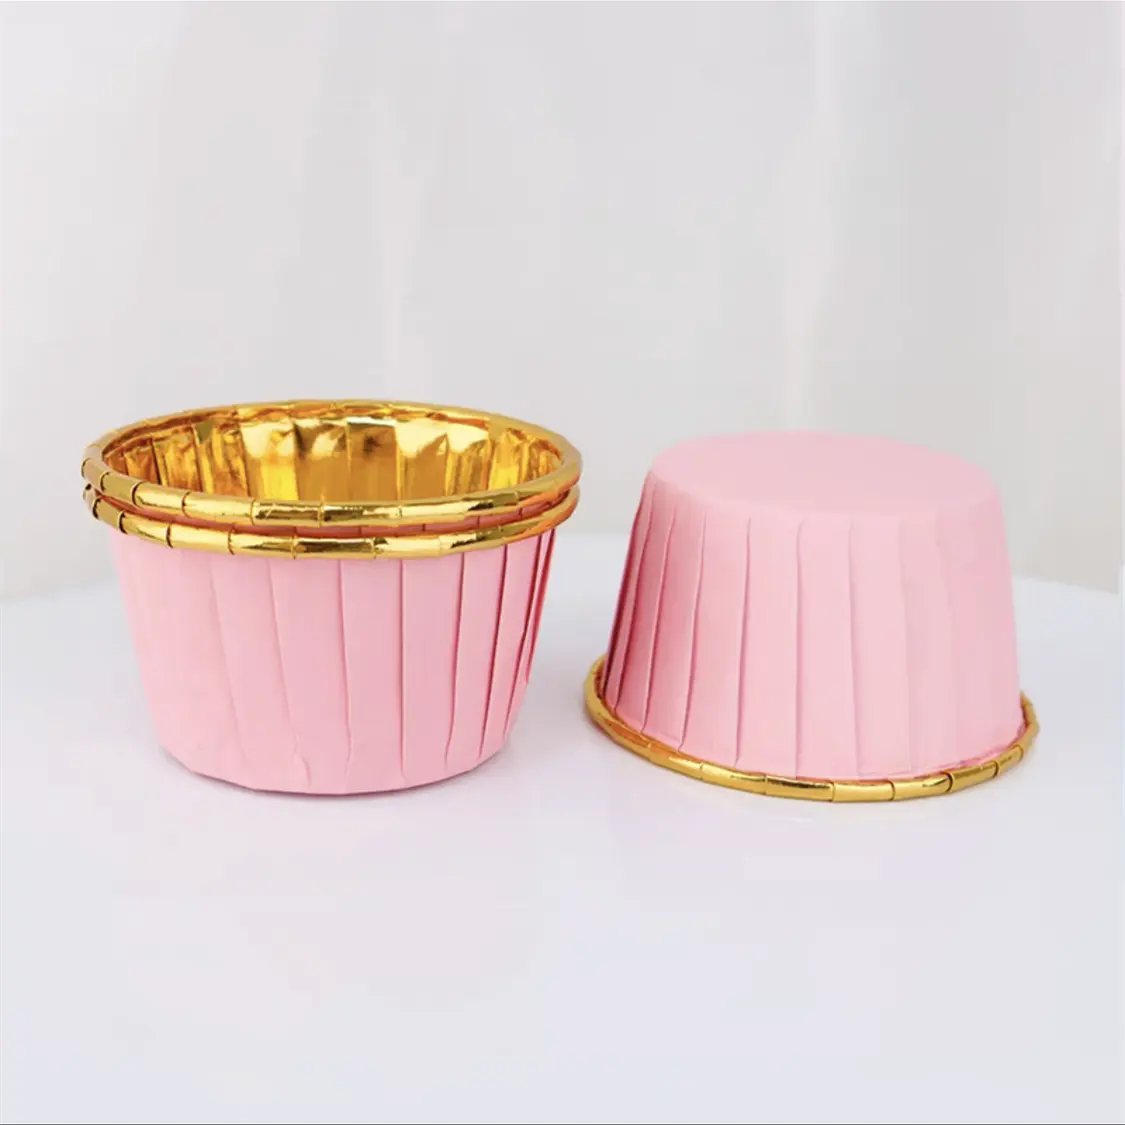 Großhandel individuell bedruckte Snack Brot Cupcake Fall Tasse beschichtet gute Qualität Antihaft Muffin Liner Back becher